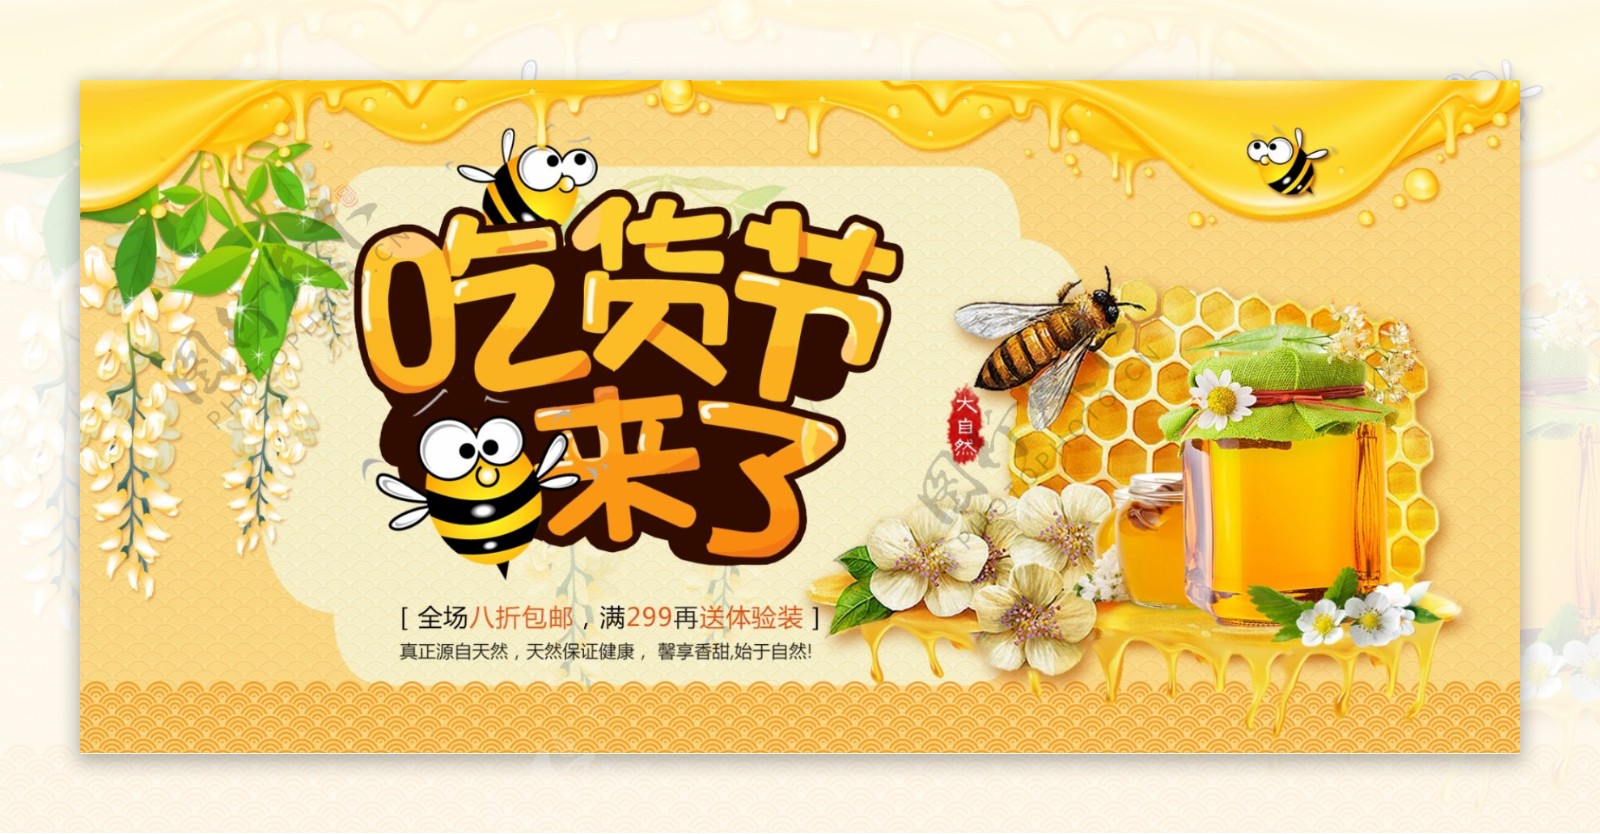 电商淘宝517吃货节来了黄色槐花蜂蜜海报